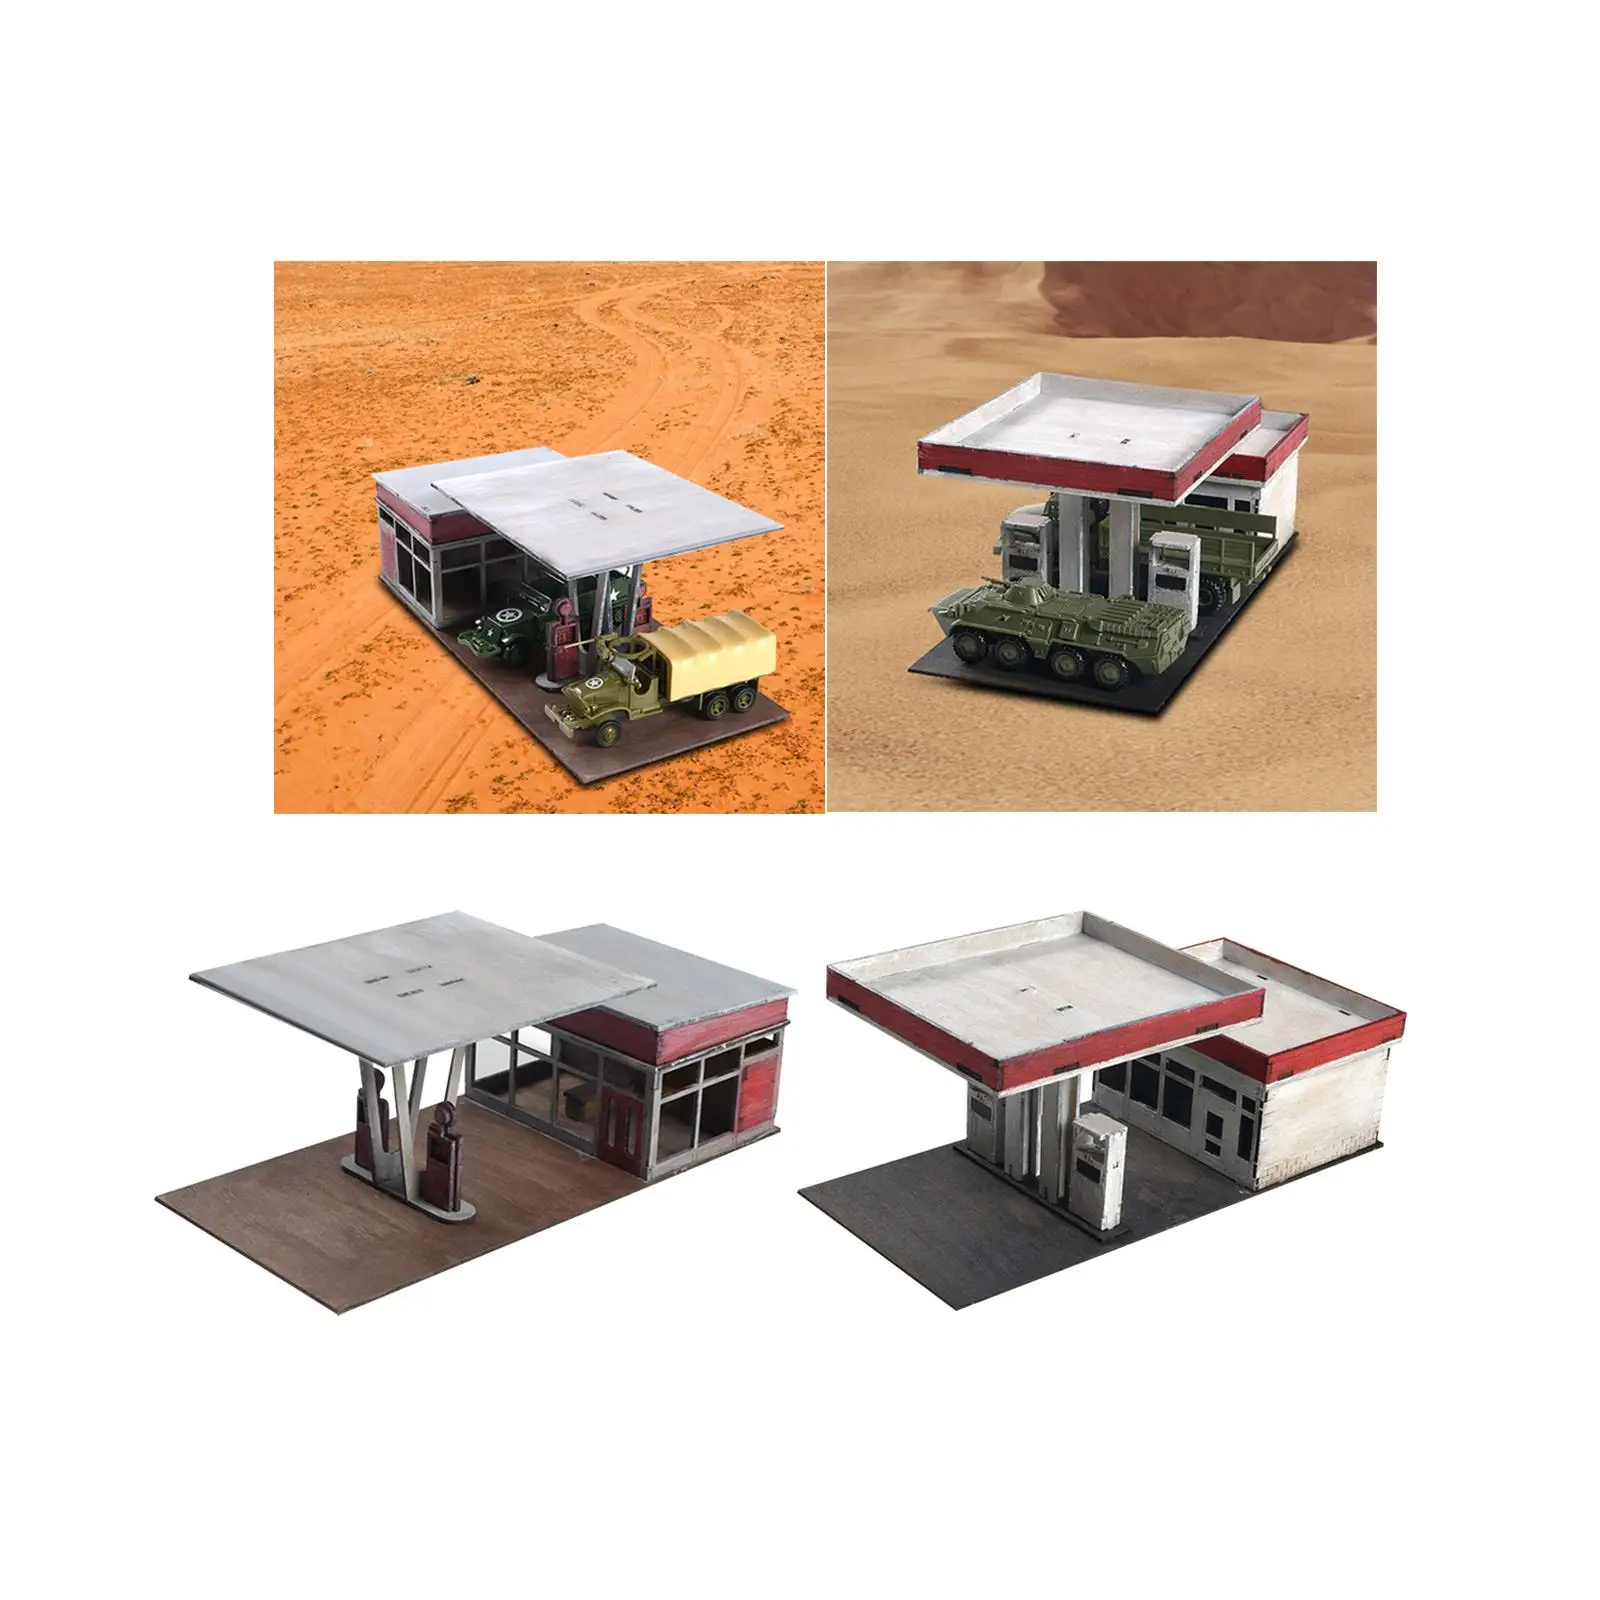 1:72 1:64 Handmade Miniature House Architecture Scene Model for Architecture Model Sand Table Accessory Diorama Micro Landscape